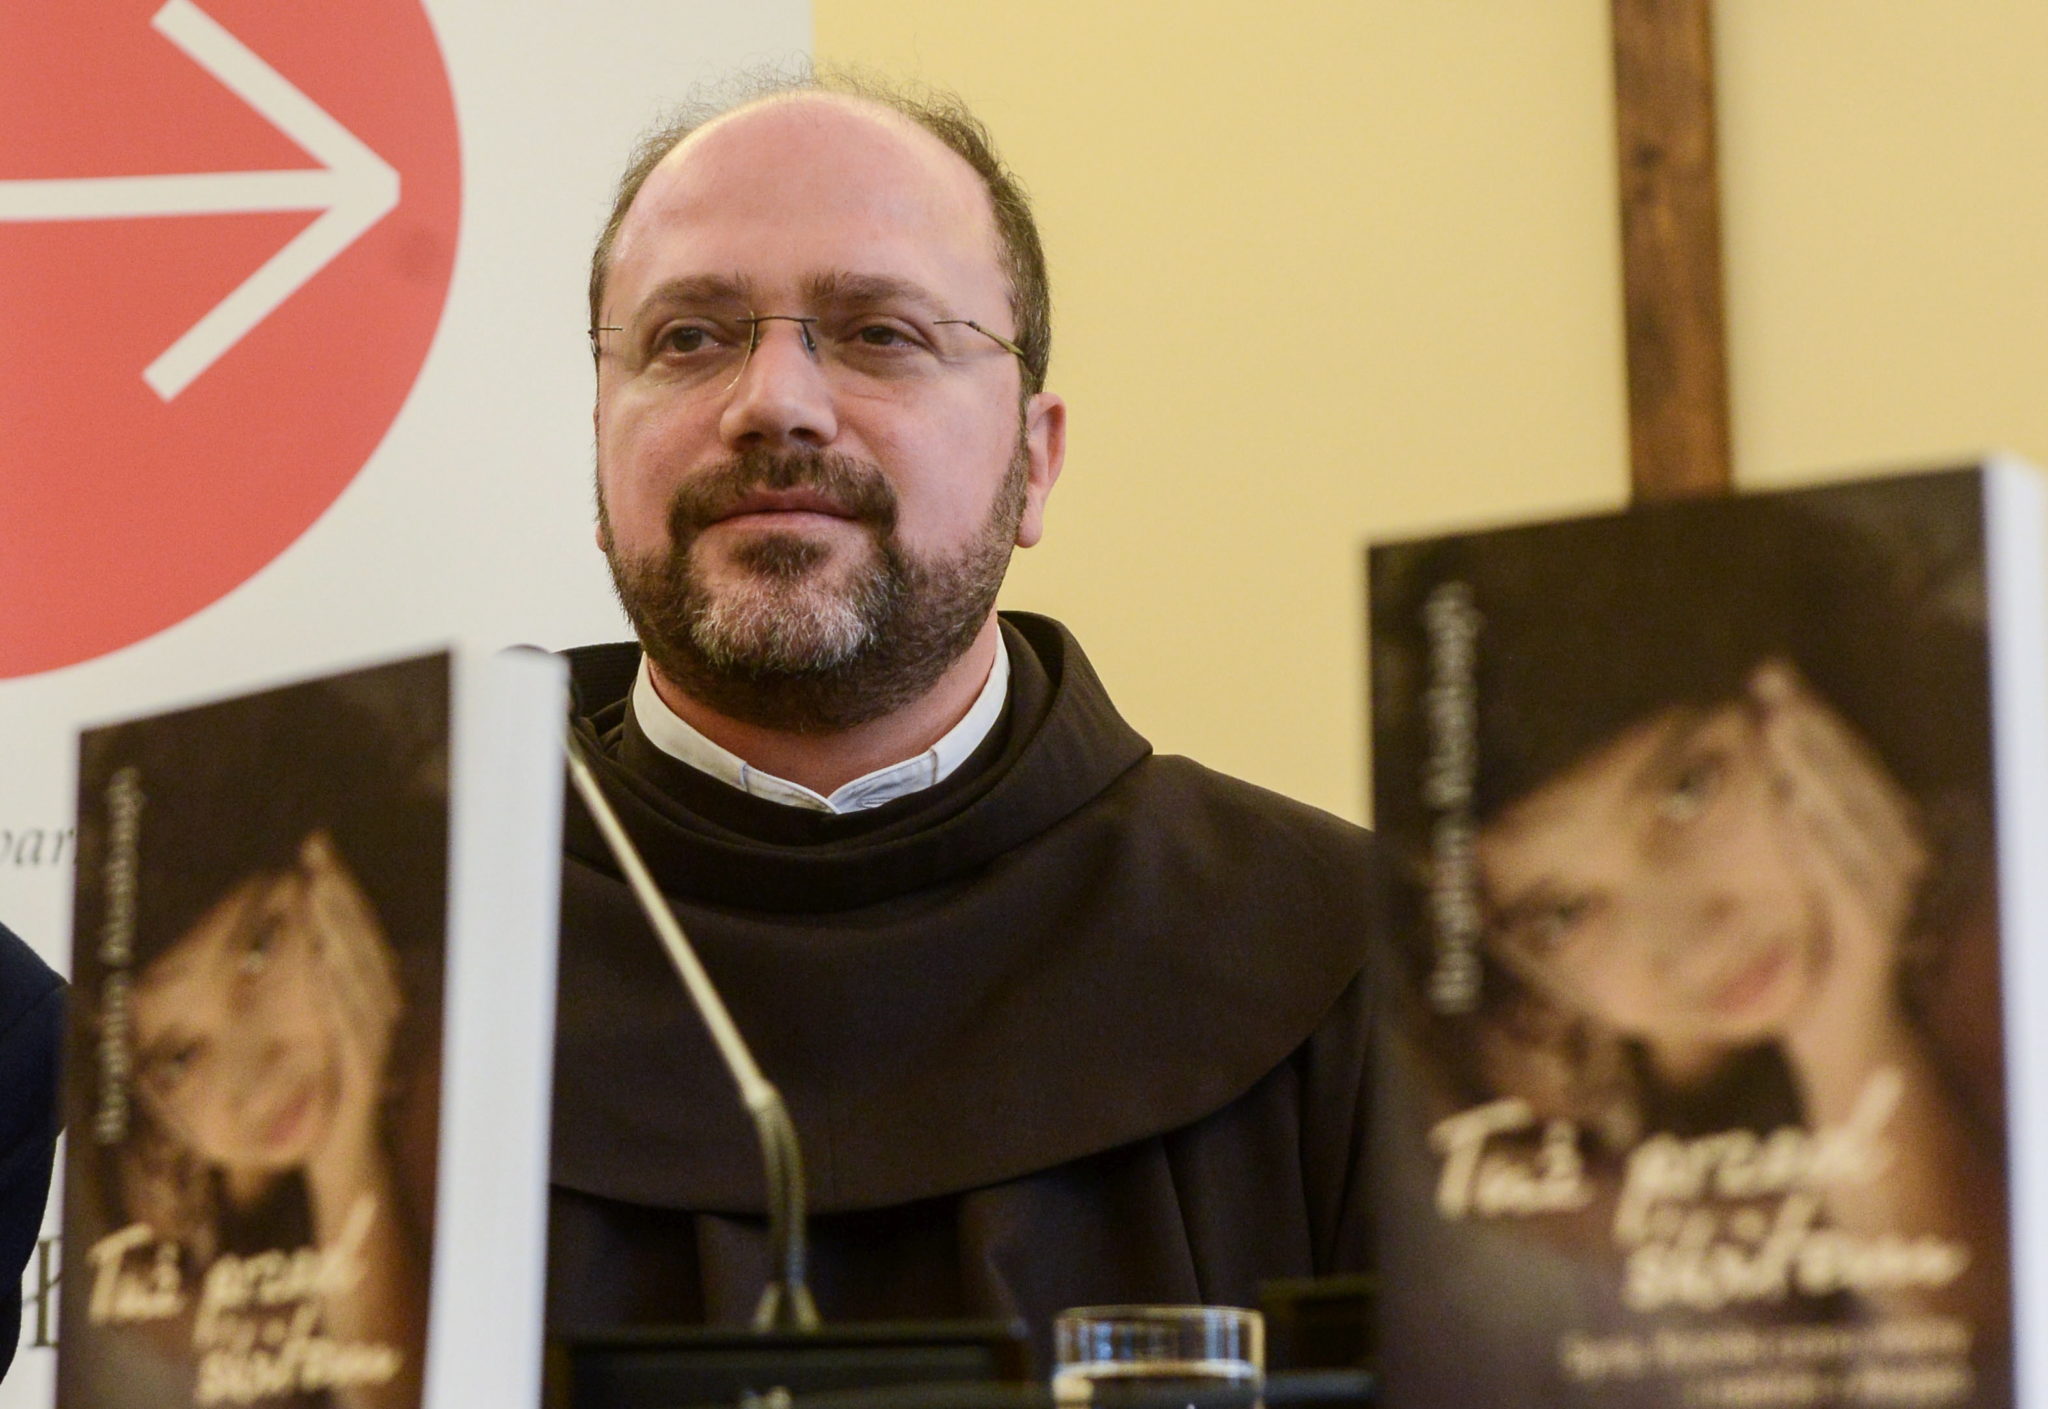 Konferencja prasowa o prześladowaniu chrześcijan z udziałem proboszcza z Aleppo, o. Ibrahima Alsabagh w Warszawie